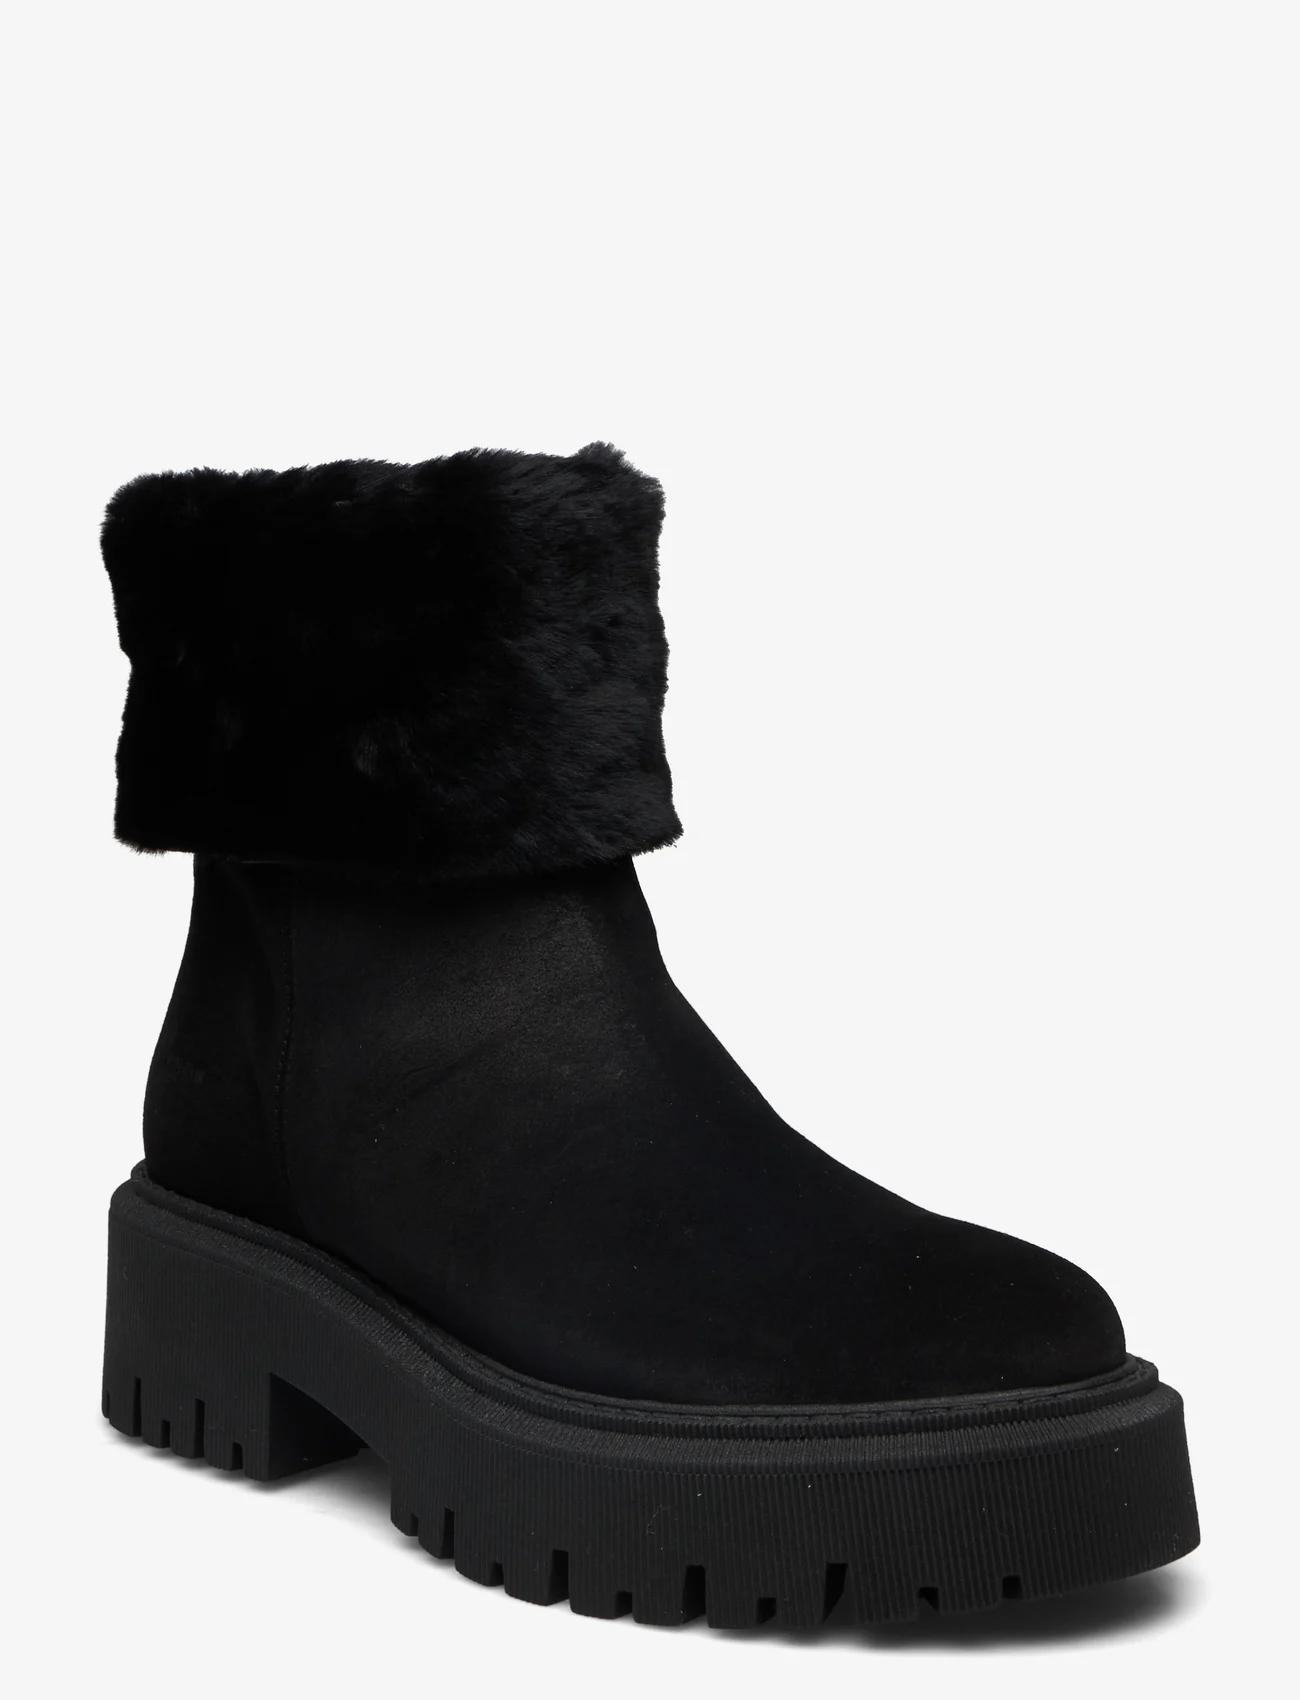 ANGULUS - Boots - flat - dames - 1163/2014 black/black lamb woo - 0